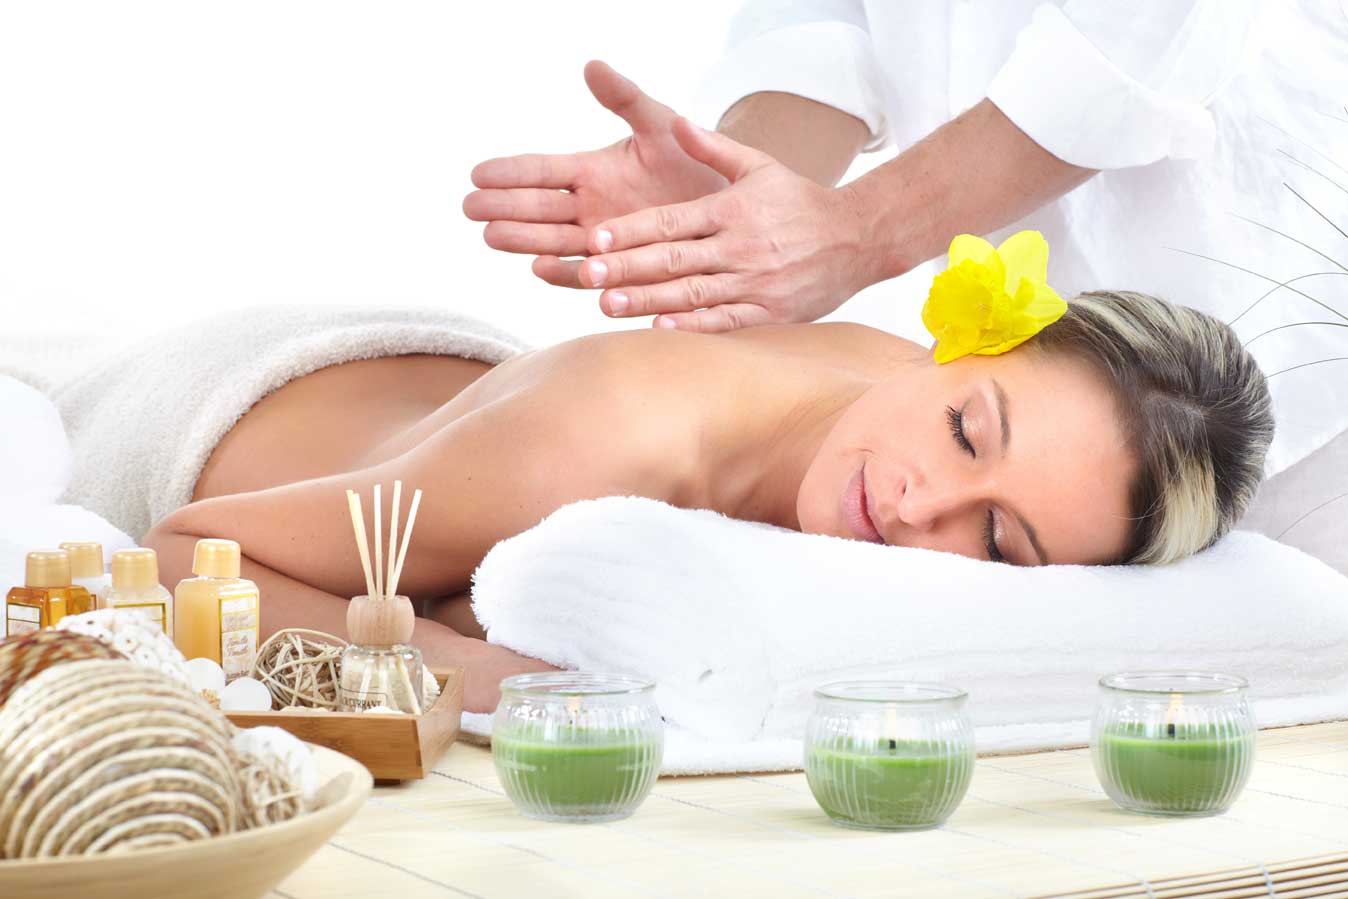 loi ich cua viec massage 1 - Những lợi ích của massage đối với cơ thể